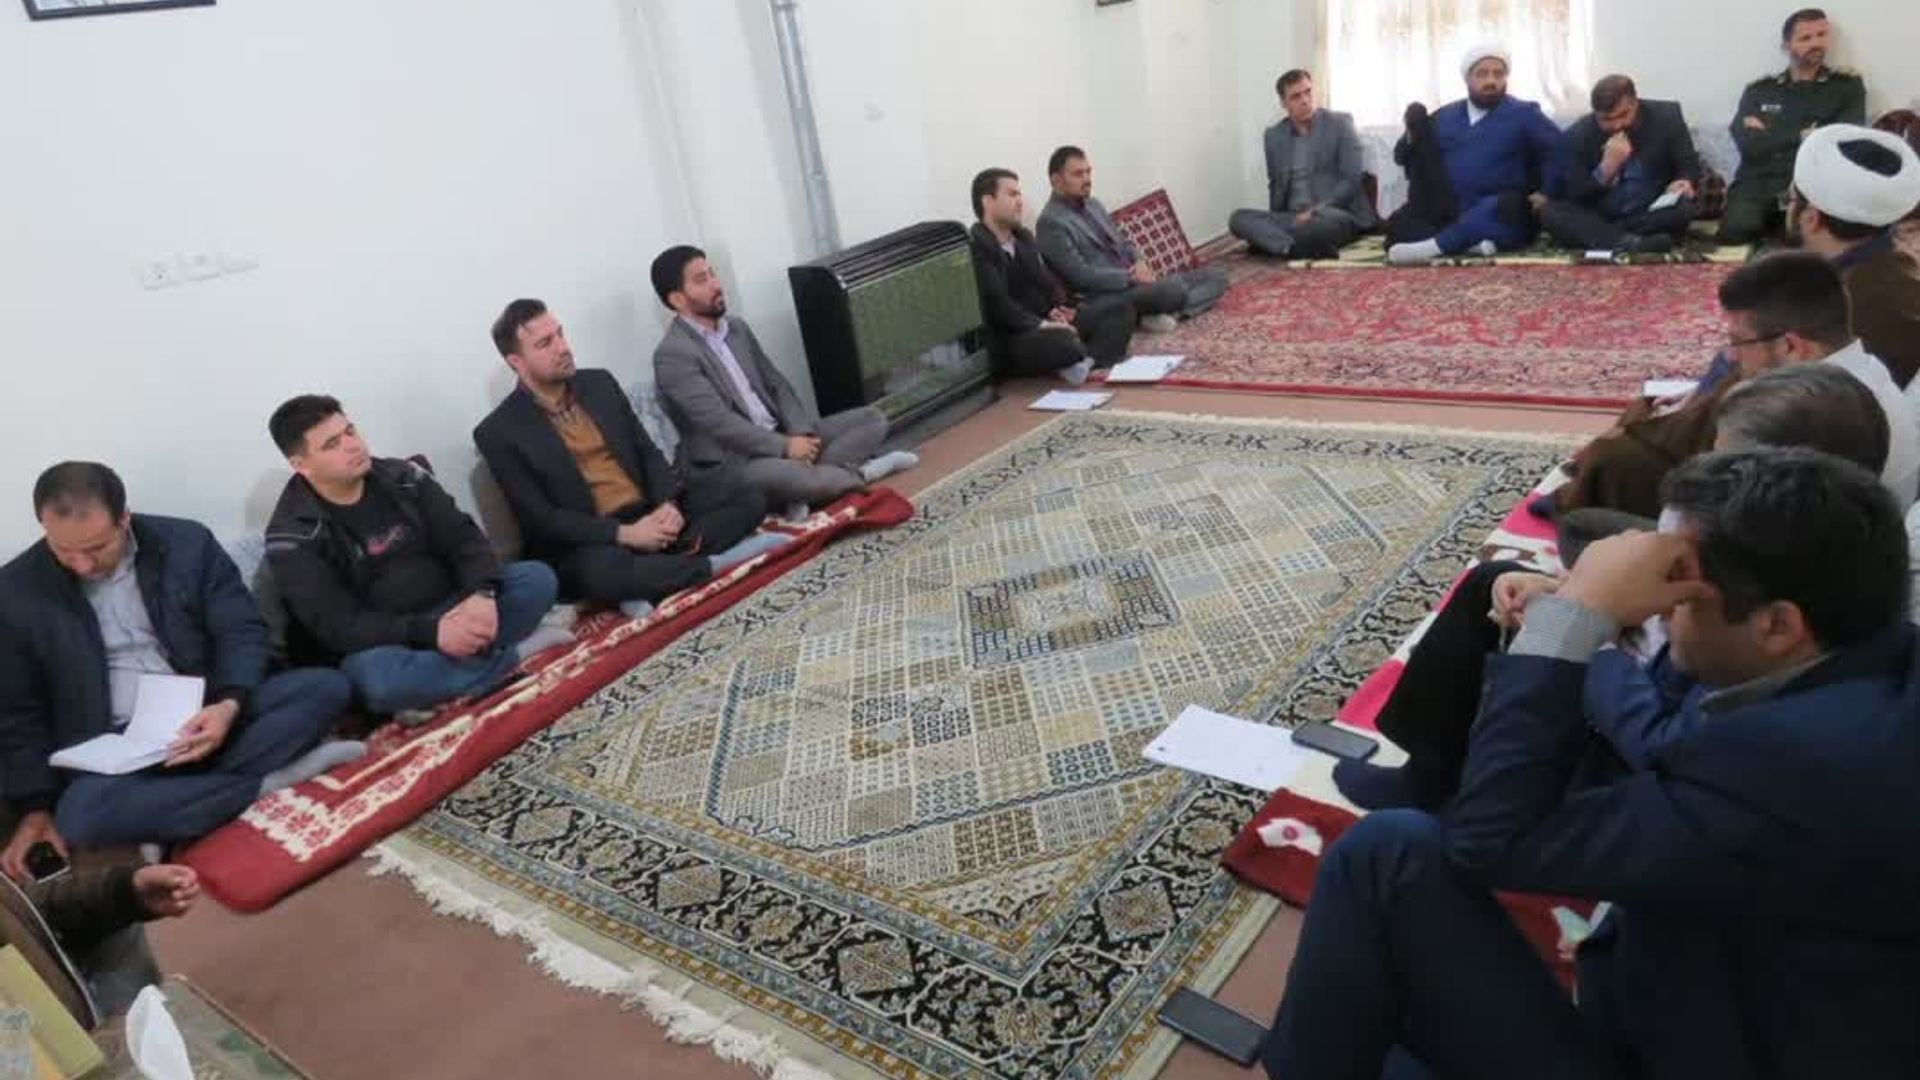 آخرین جلسه شورای فرهنگ عمومی شهرستان فراهان